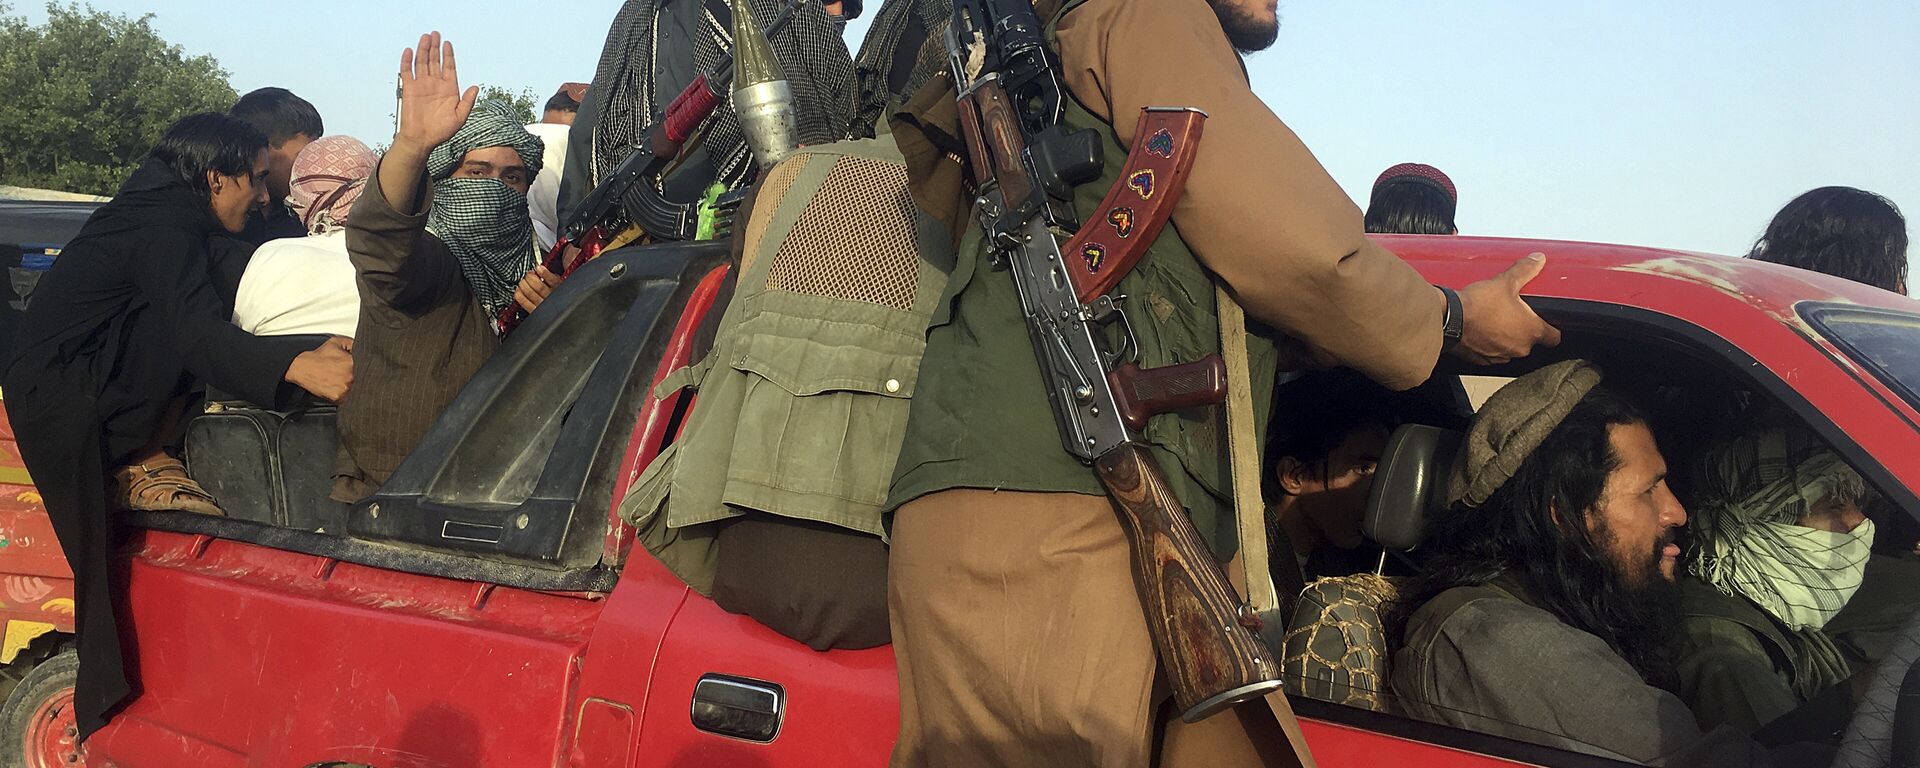 Боевики Талибан в провинции Нангархар на востоке Афганистана - Sputnik Таджикистан, 1920, 10.12.2020